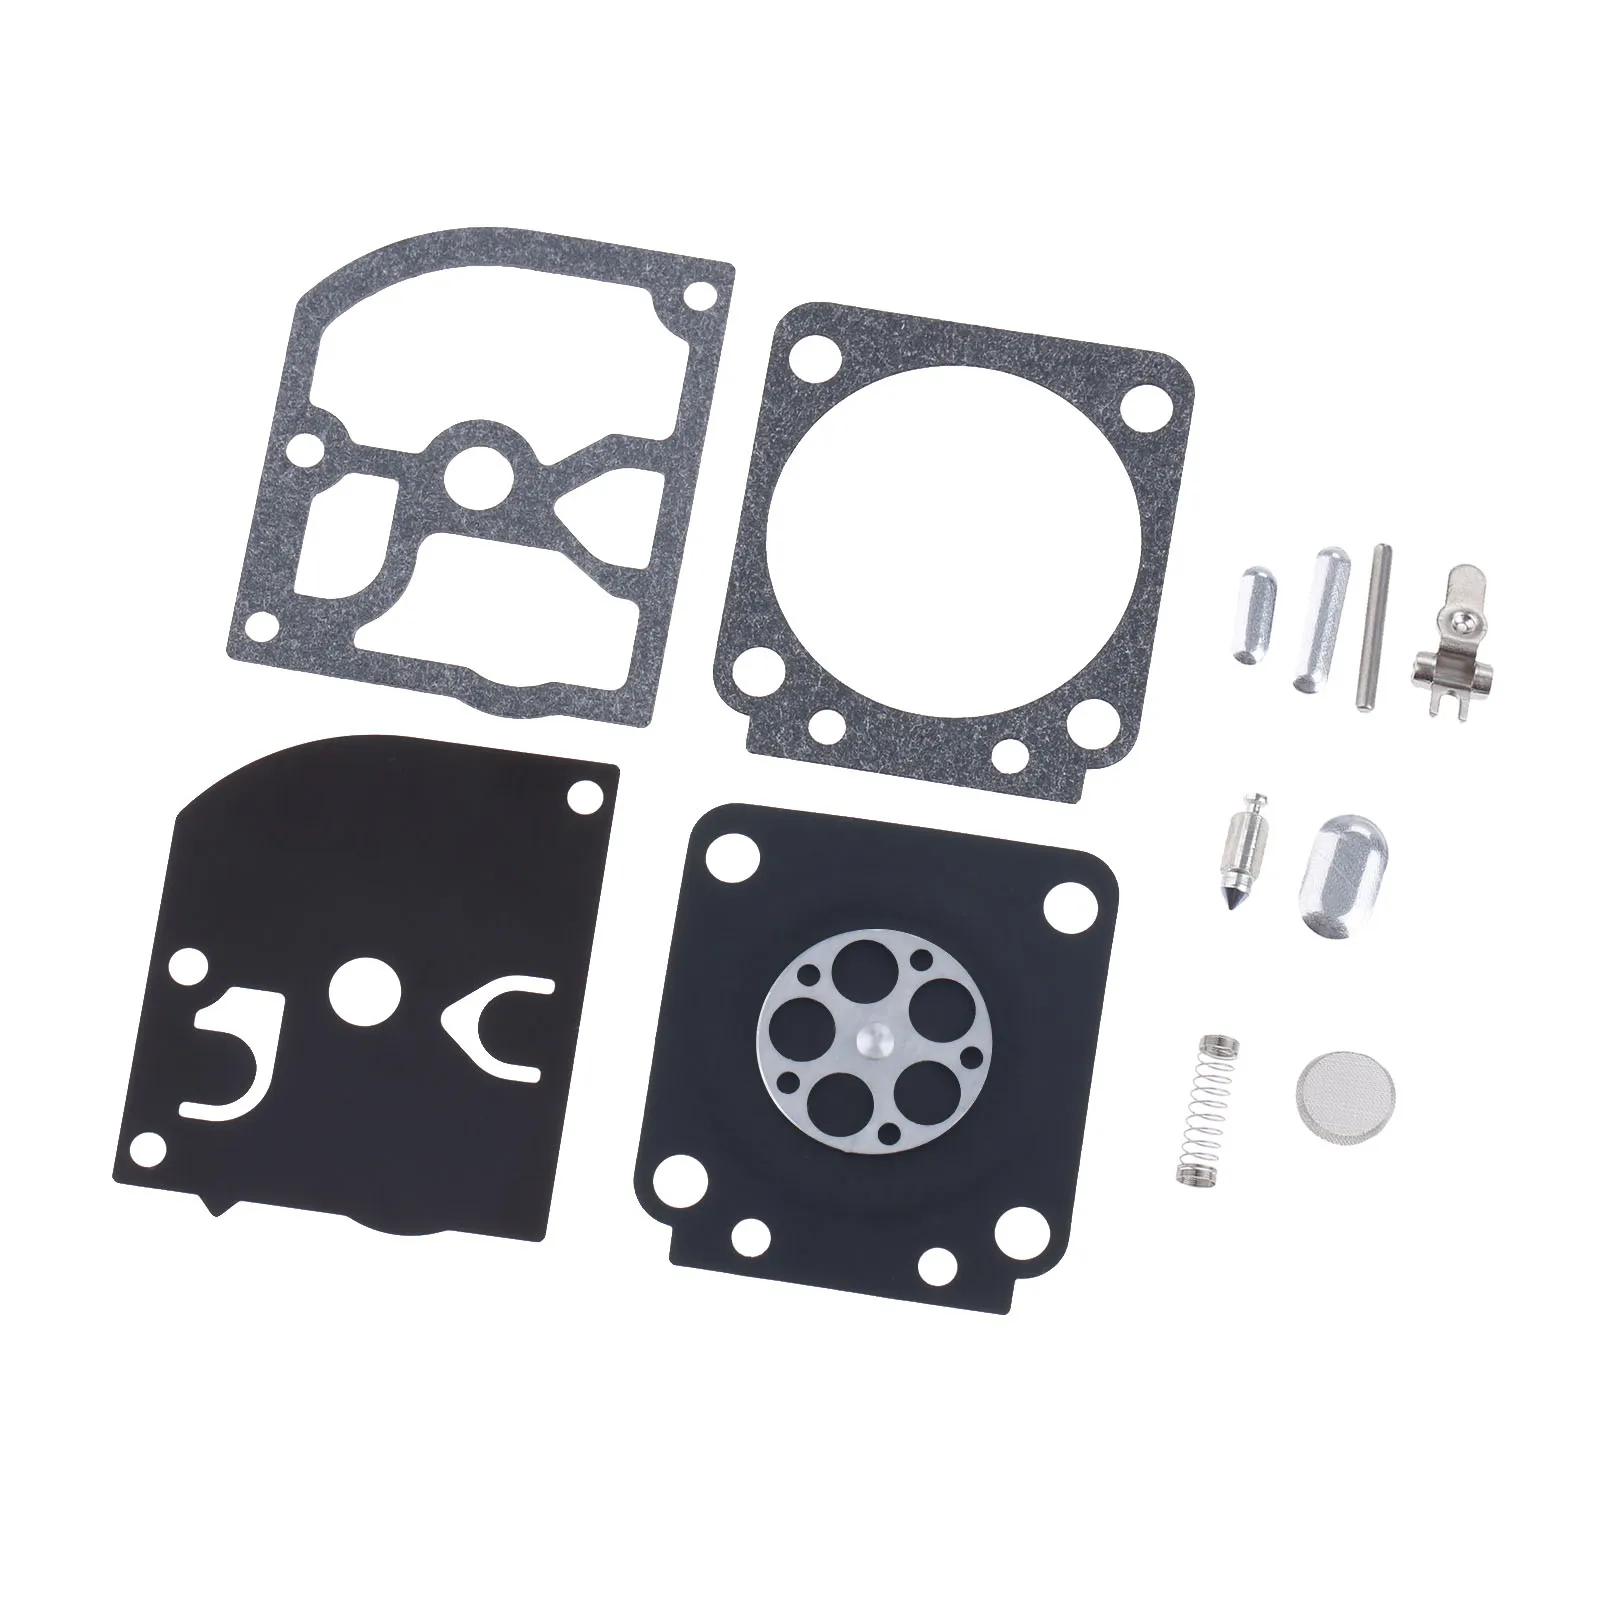 

Carburetor Rebuild Carb Repair Kit For ZAMA RB-66 C1Q-S28 29 30 41 42 44 STIHL C1Q-528 A-D C1Q-52D A-C C1Q-530 A-C 017 MS170